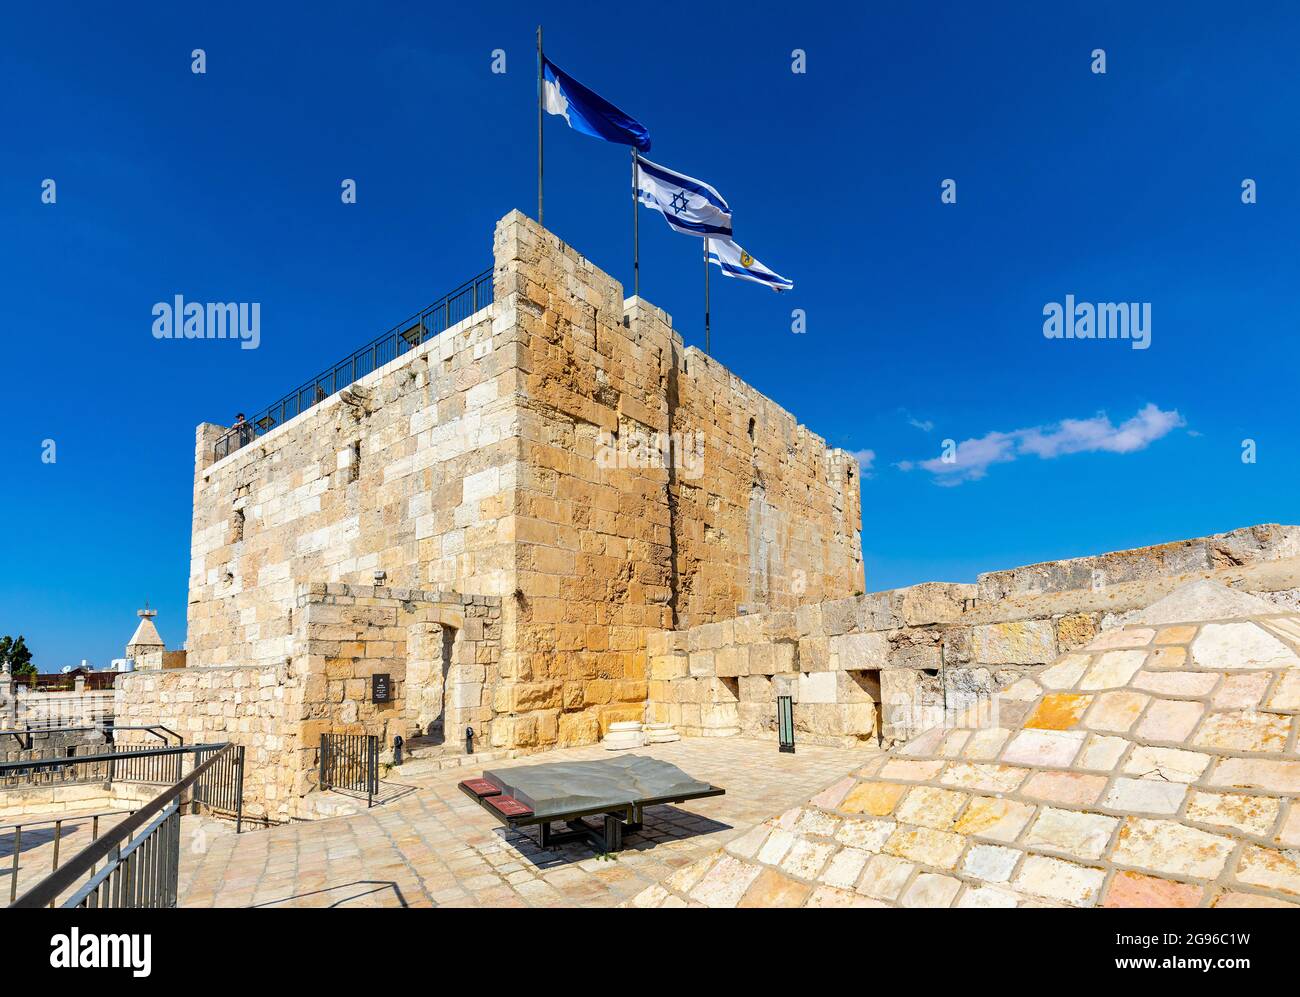 Jerusalem, Israel - 12. Oktober 2017: Phasael Tower, bekannt als Hippicus Tower als Teil des Tower of David Zitadelle Komplexes in der Altstadt von Jerusalem Stockfoto